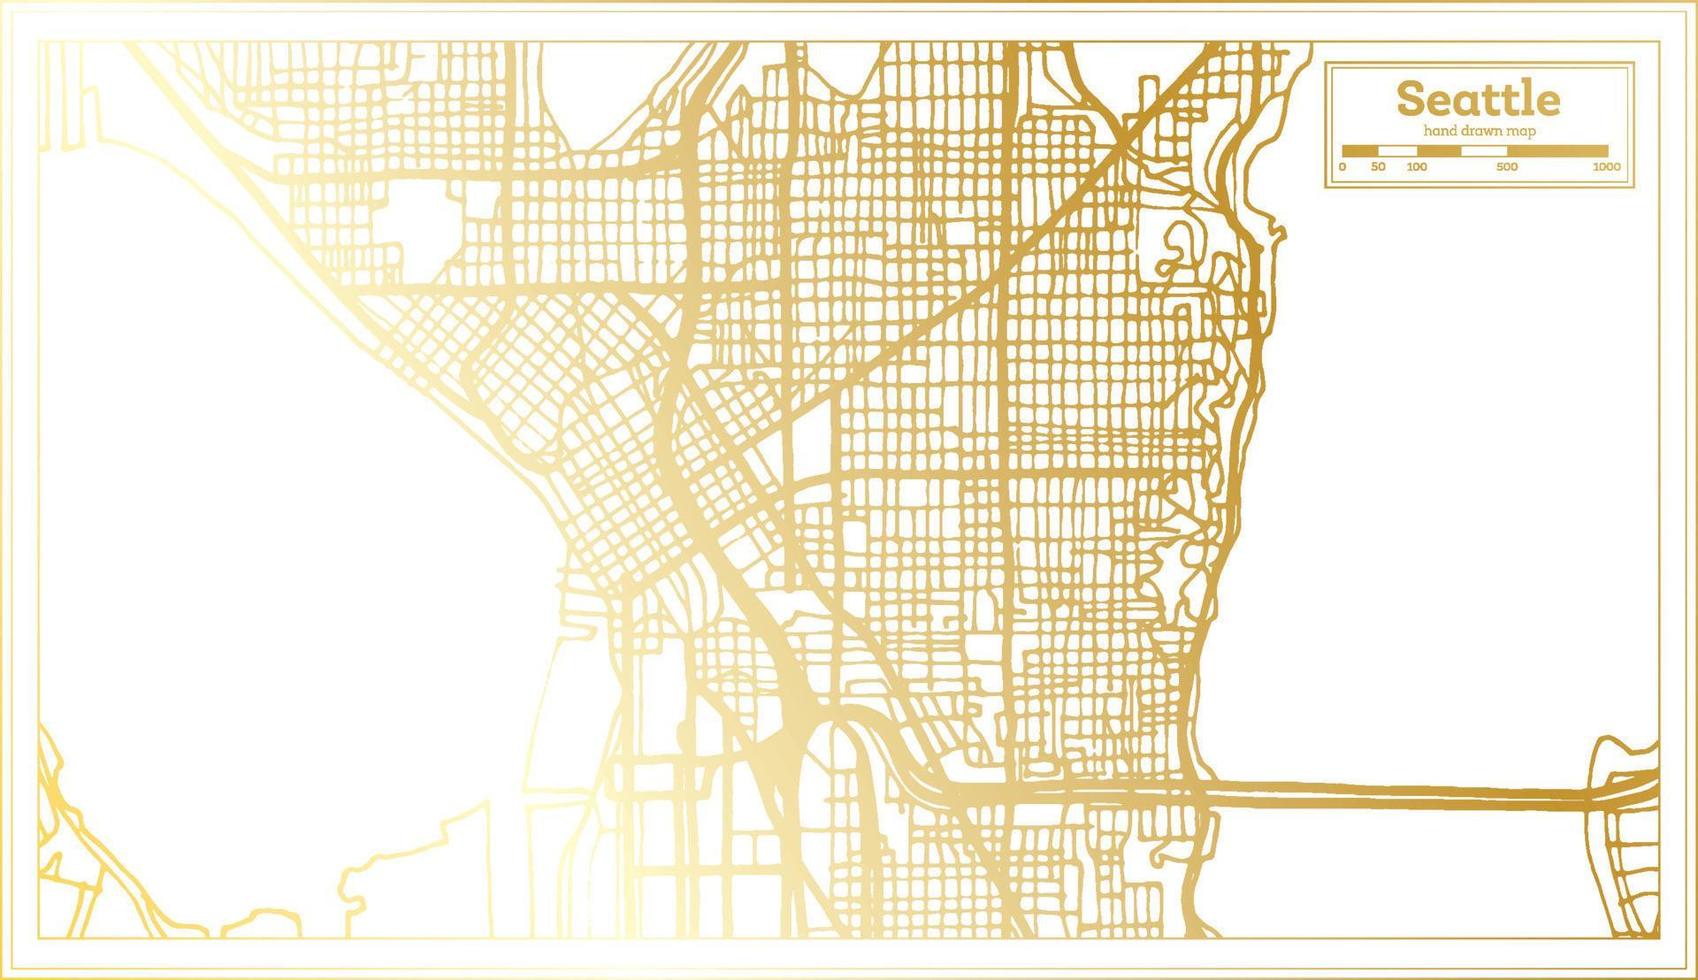 plan de la ville de seattle usa dans un style rétro de couleur dorée. carte muette. vecteur